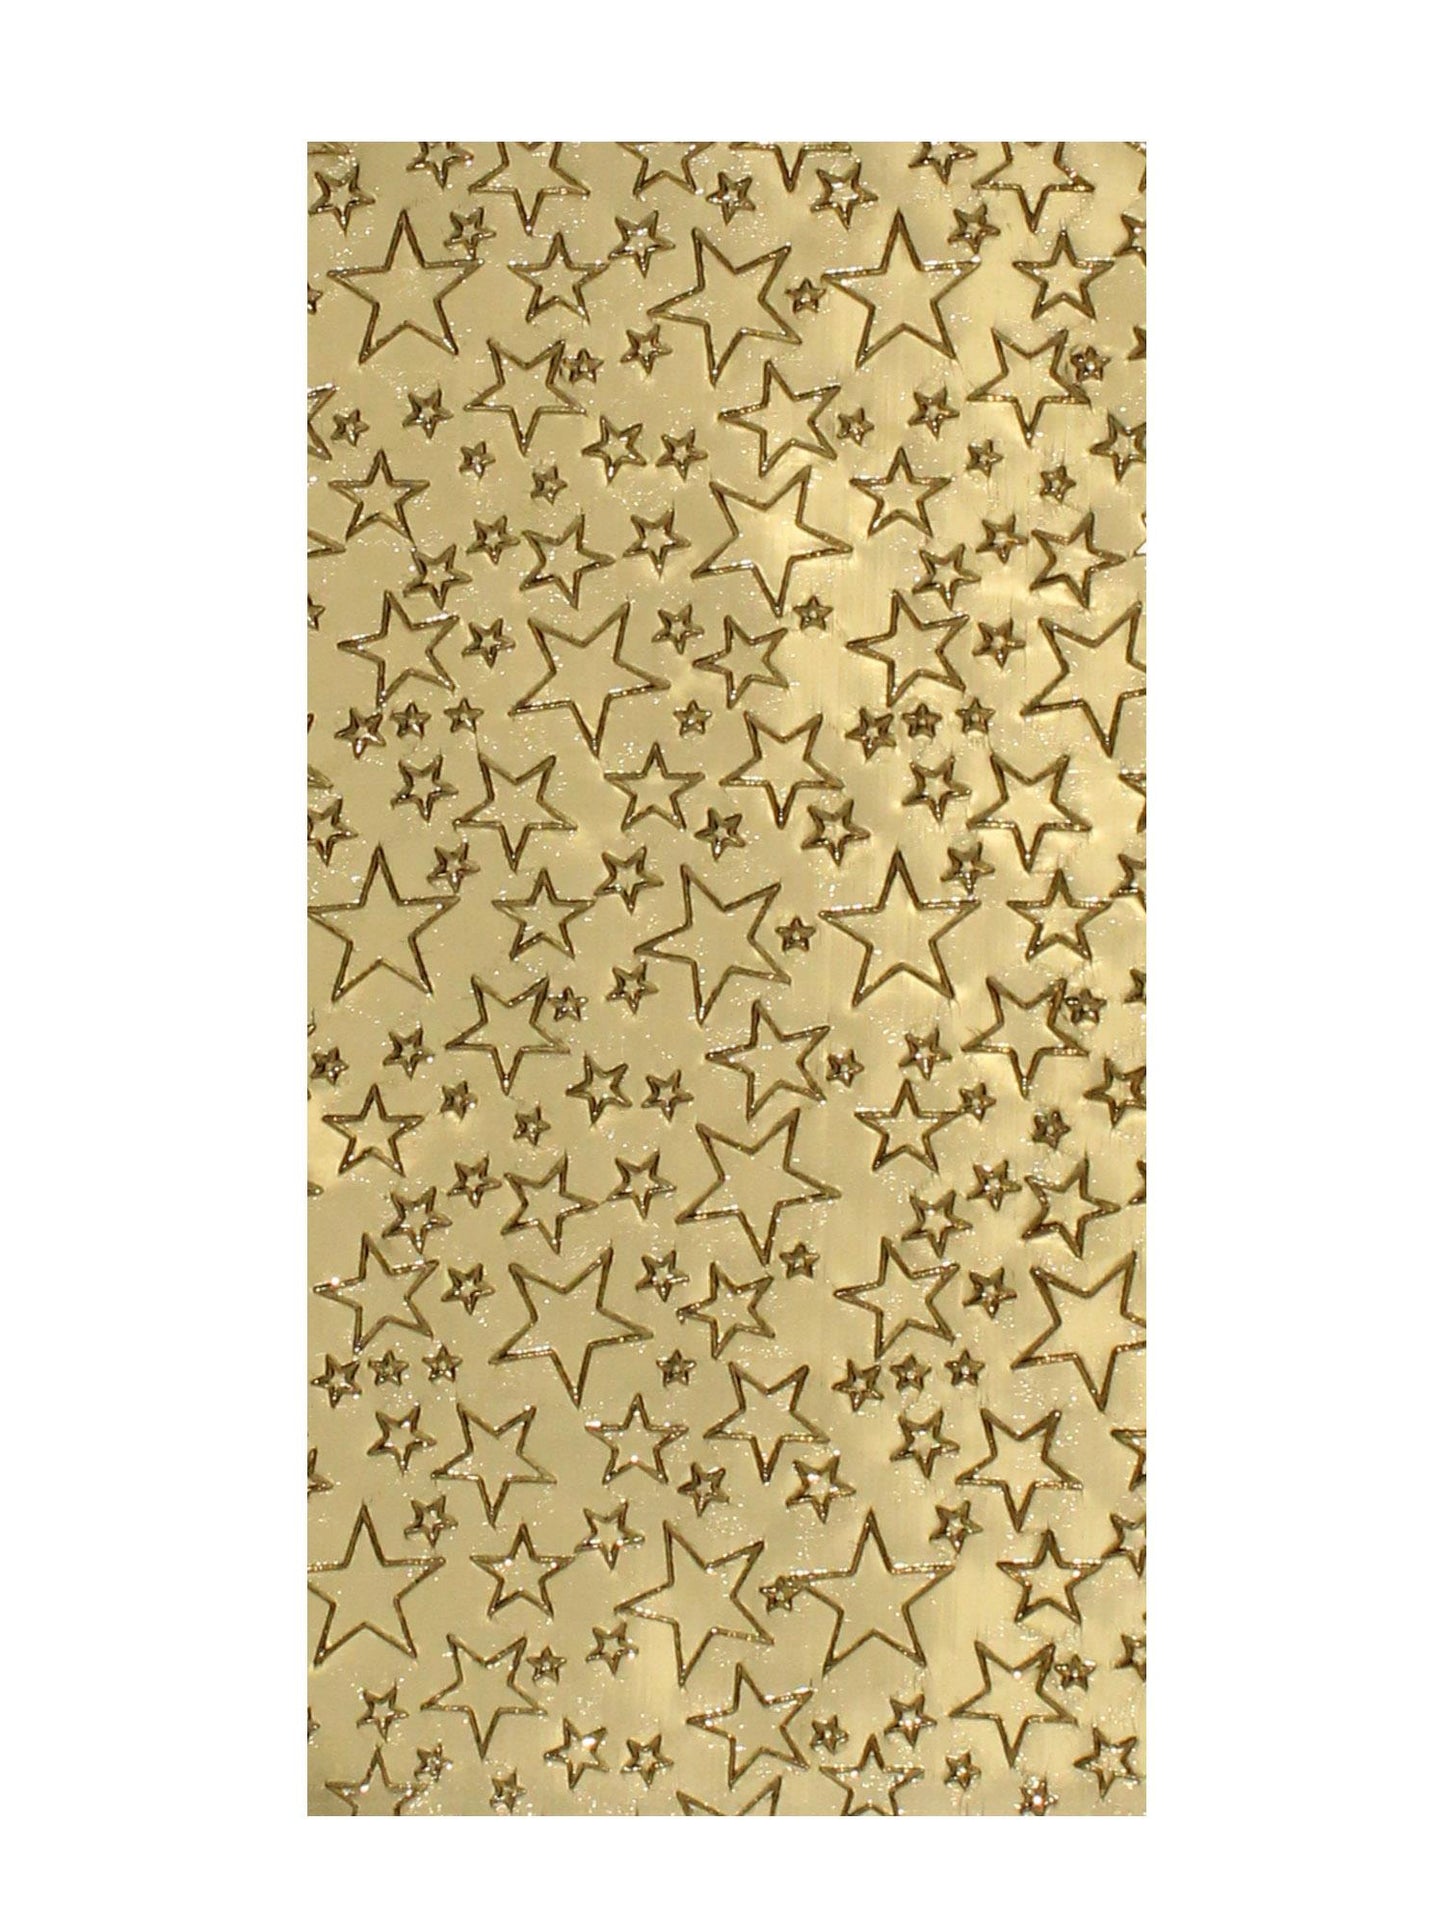 10x Wachsplatten Sterne Kartonware 200/100mm (Gold)